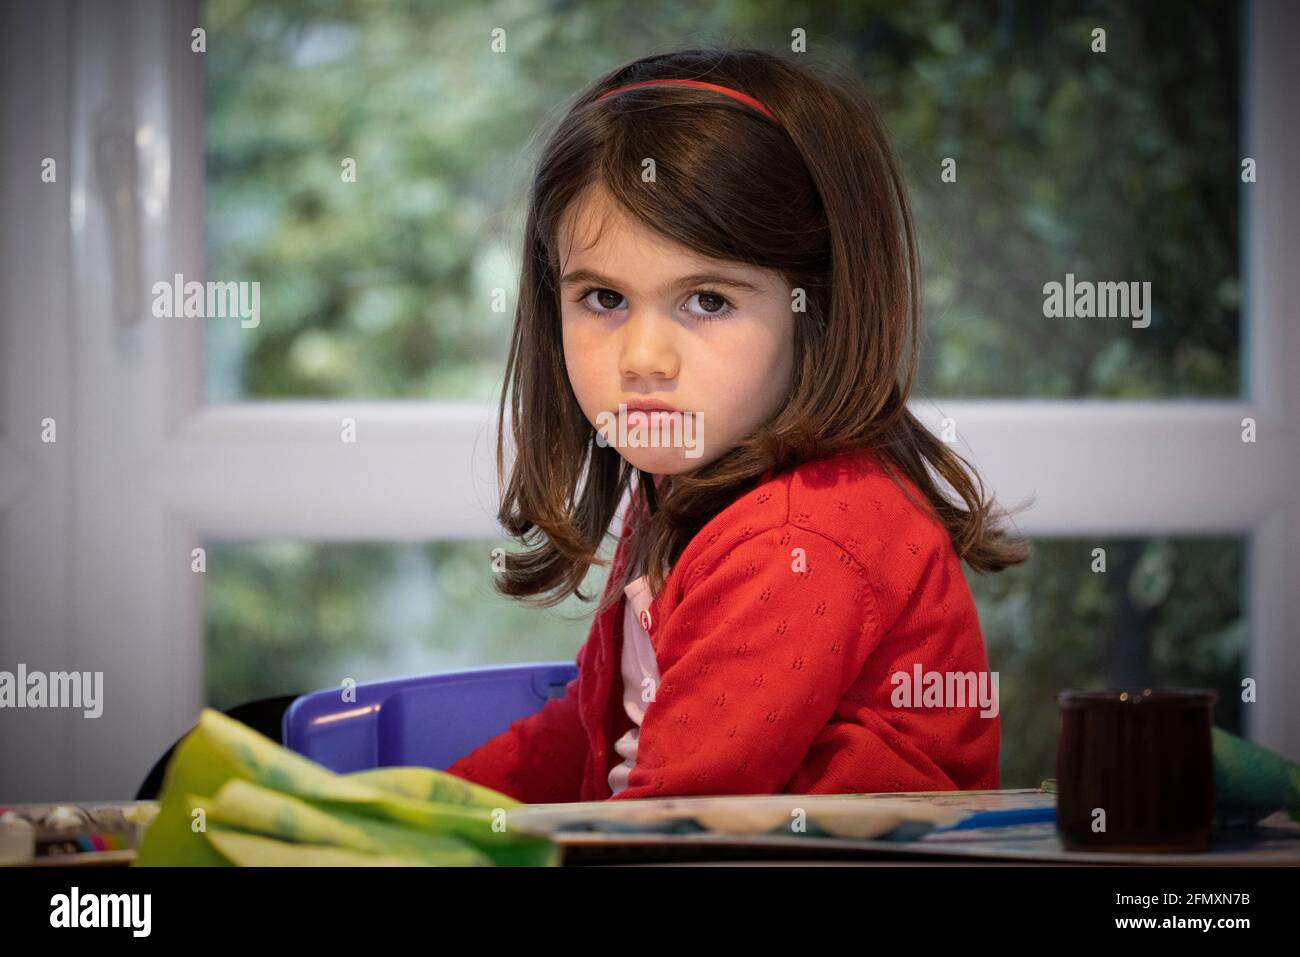 Portrait d'une petite fille boudeuse de quatre ans. / Portrait of a sulky four-year-old girl. Stock Photo